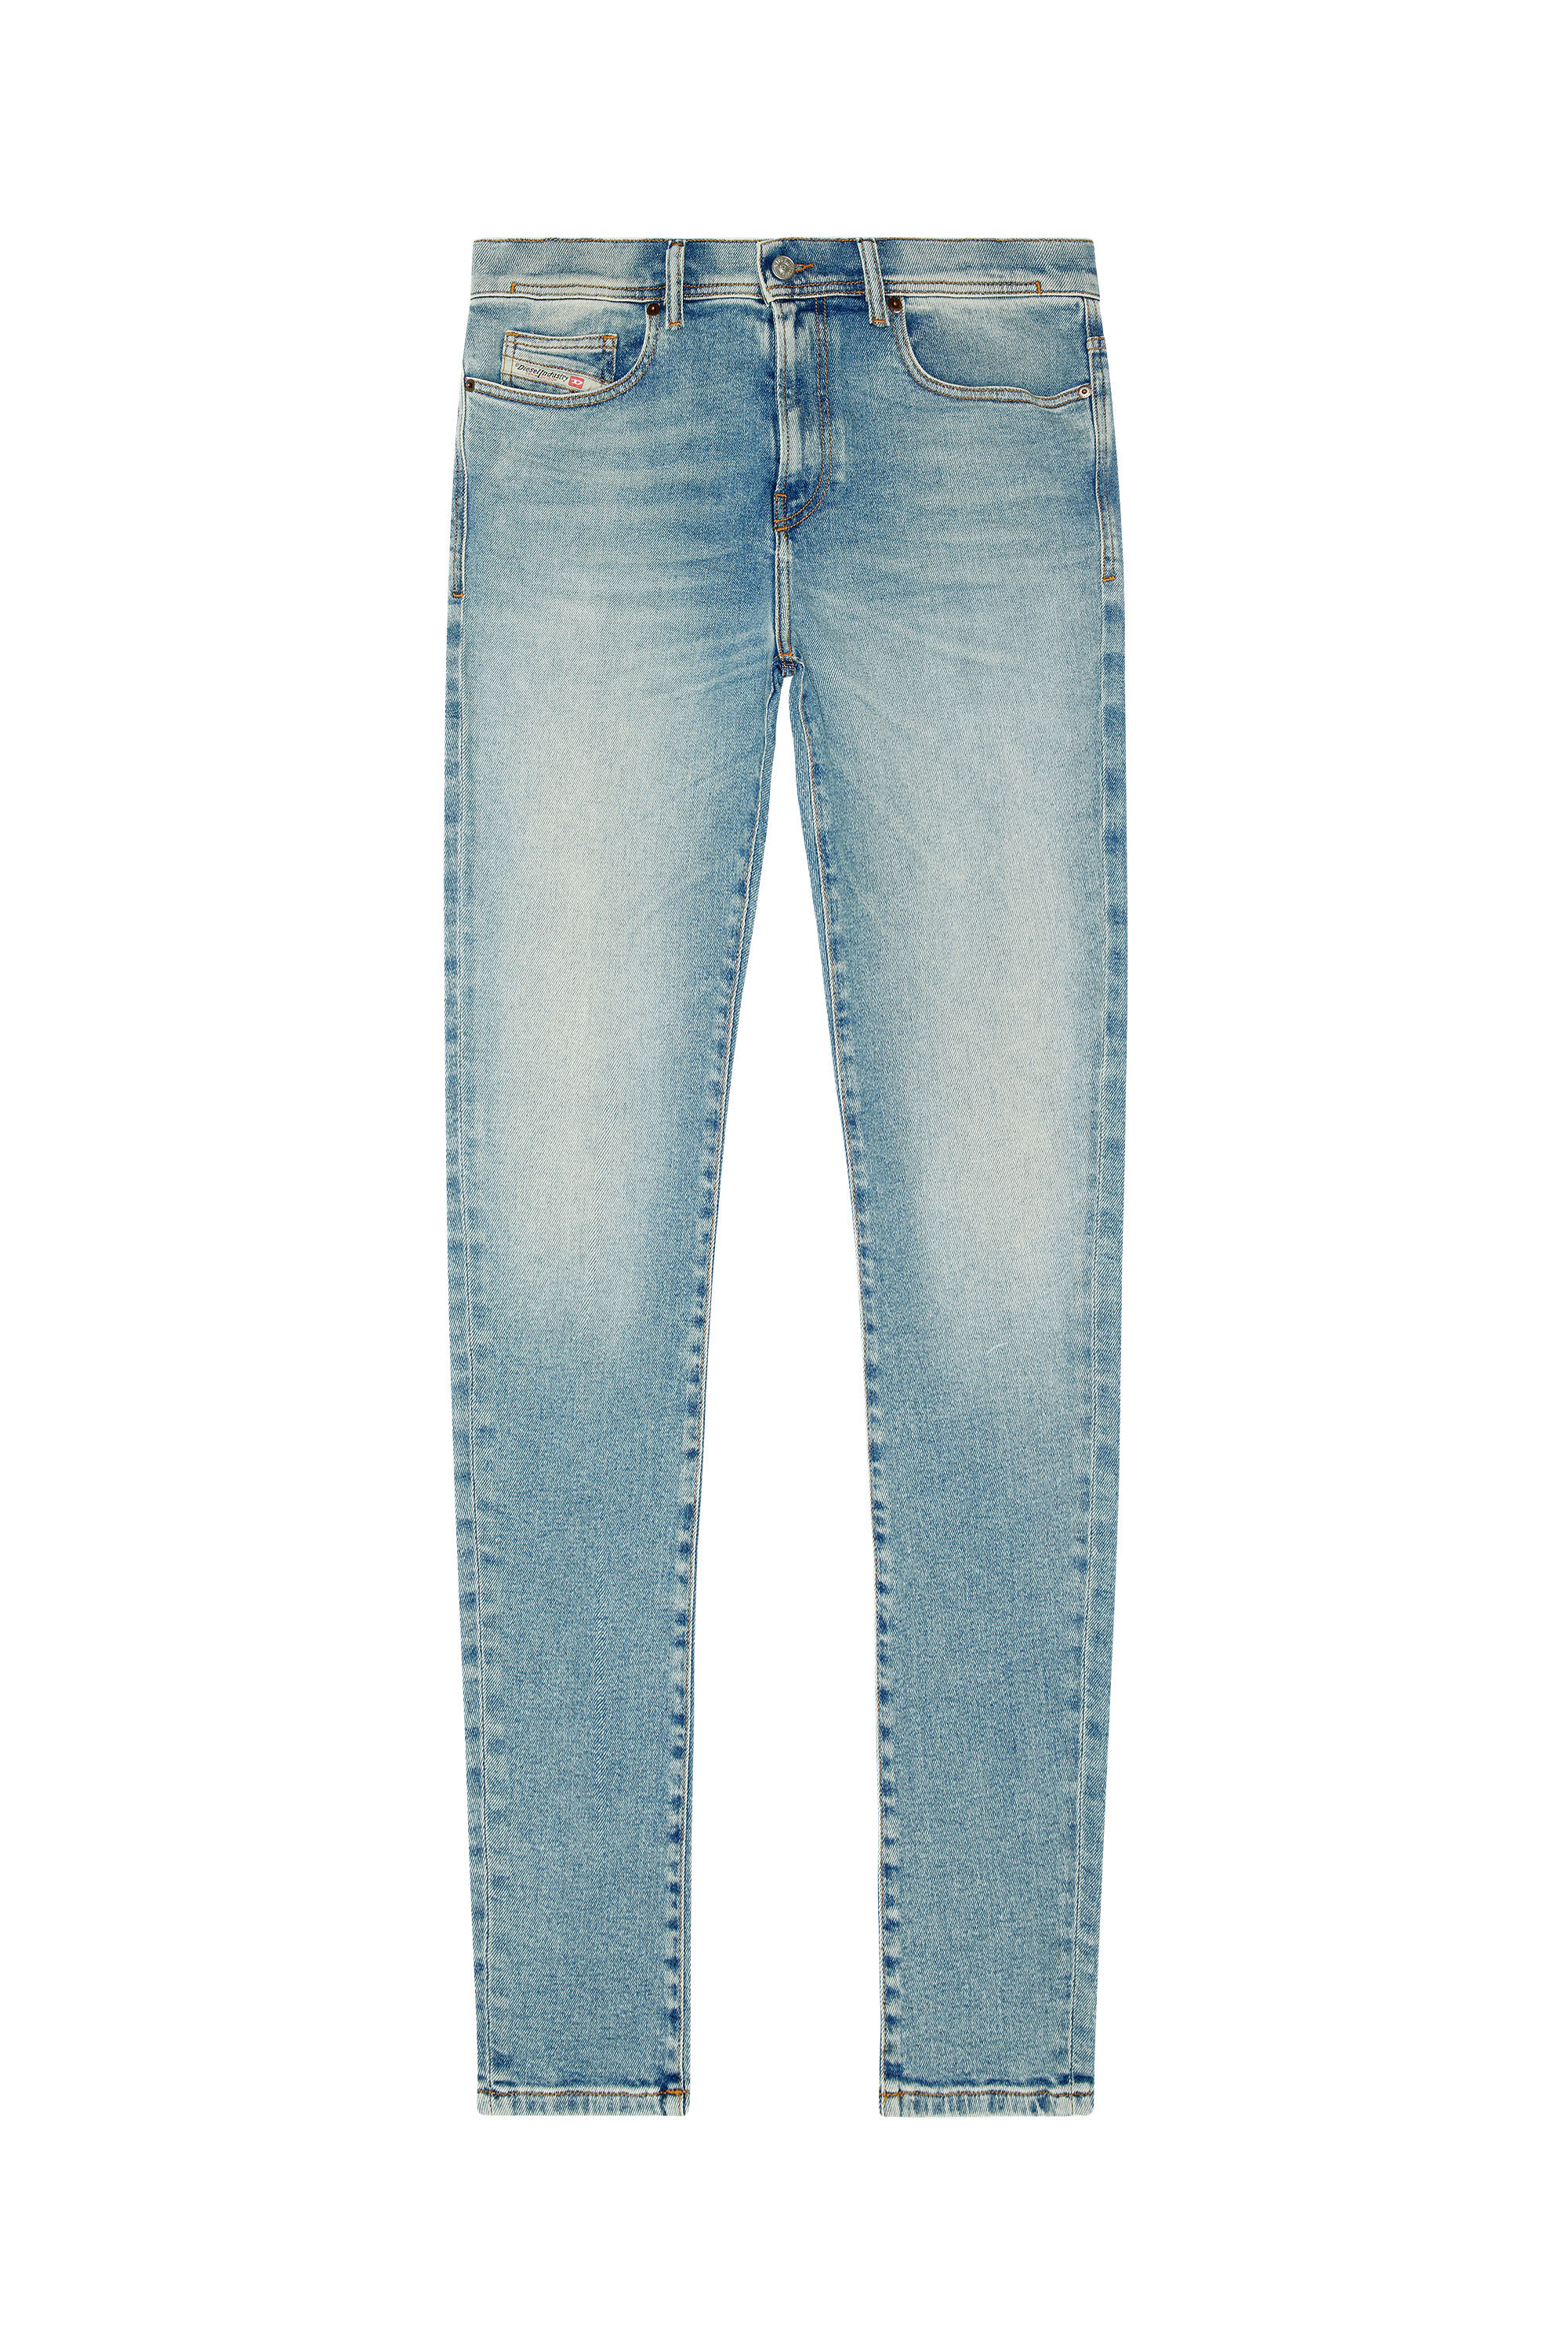 Diesel - Skinny Jeans 1983 D-Amny 09E82, Light Blue - Image 2